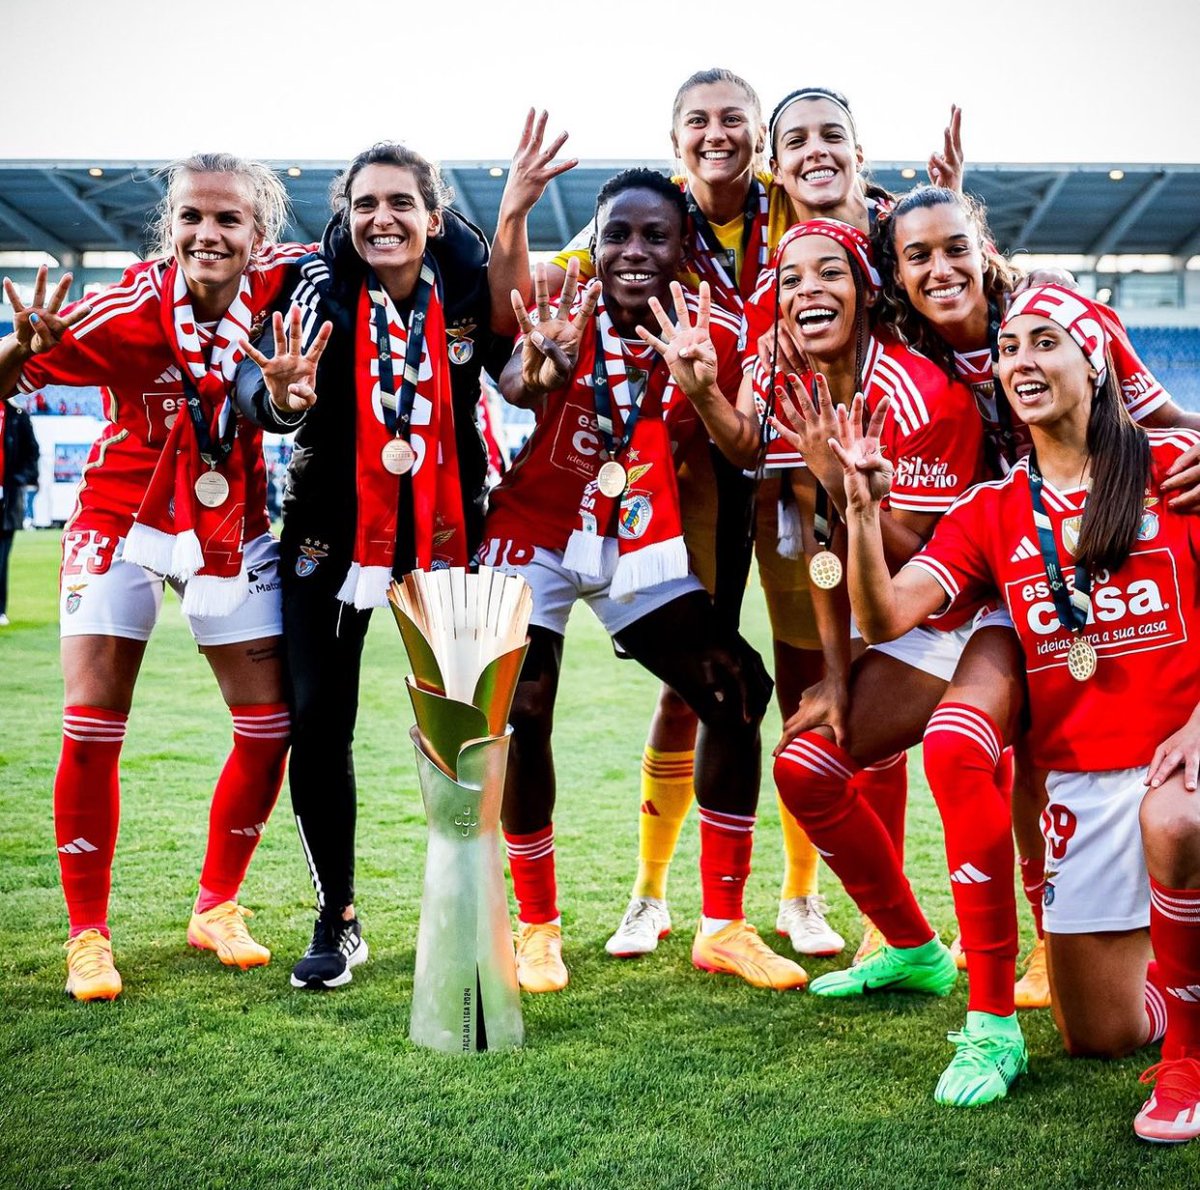 SL Benfica conquista a Taça da Liga Feminina pela quarta vez 🏆🇵🇹

#benfica #taçadaliga #portugal #football #champions #women #viral